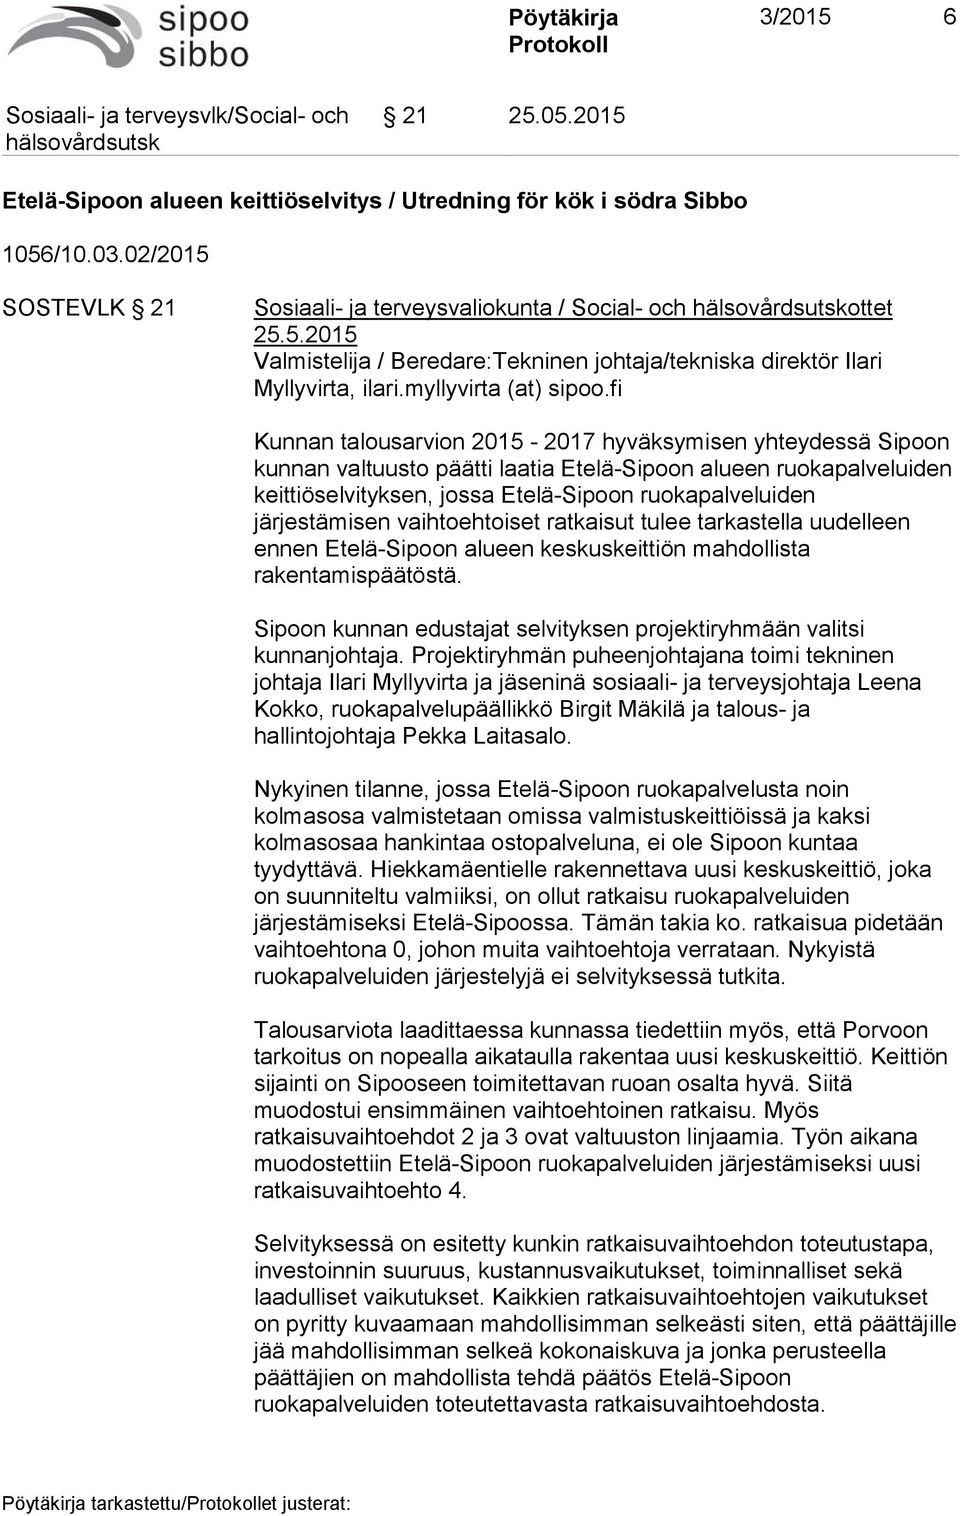 fi Kunnan talousarvion 2015-2017 hyväksymisen yhteydessä Sipoon kunnan valtuusto päätti laatia Etelä-Sipoon alueen ruokapalveluiden keittiöselvityksen, jossa Etelä-Sipoon ruokapalveluiden